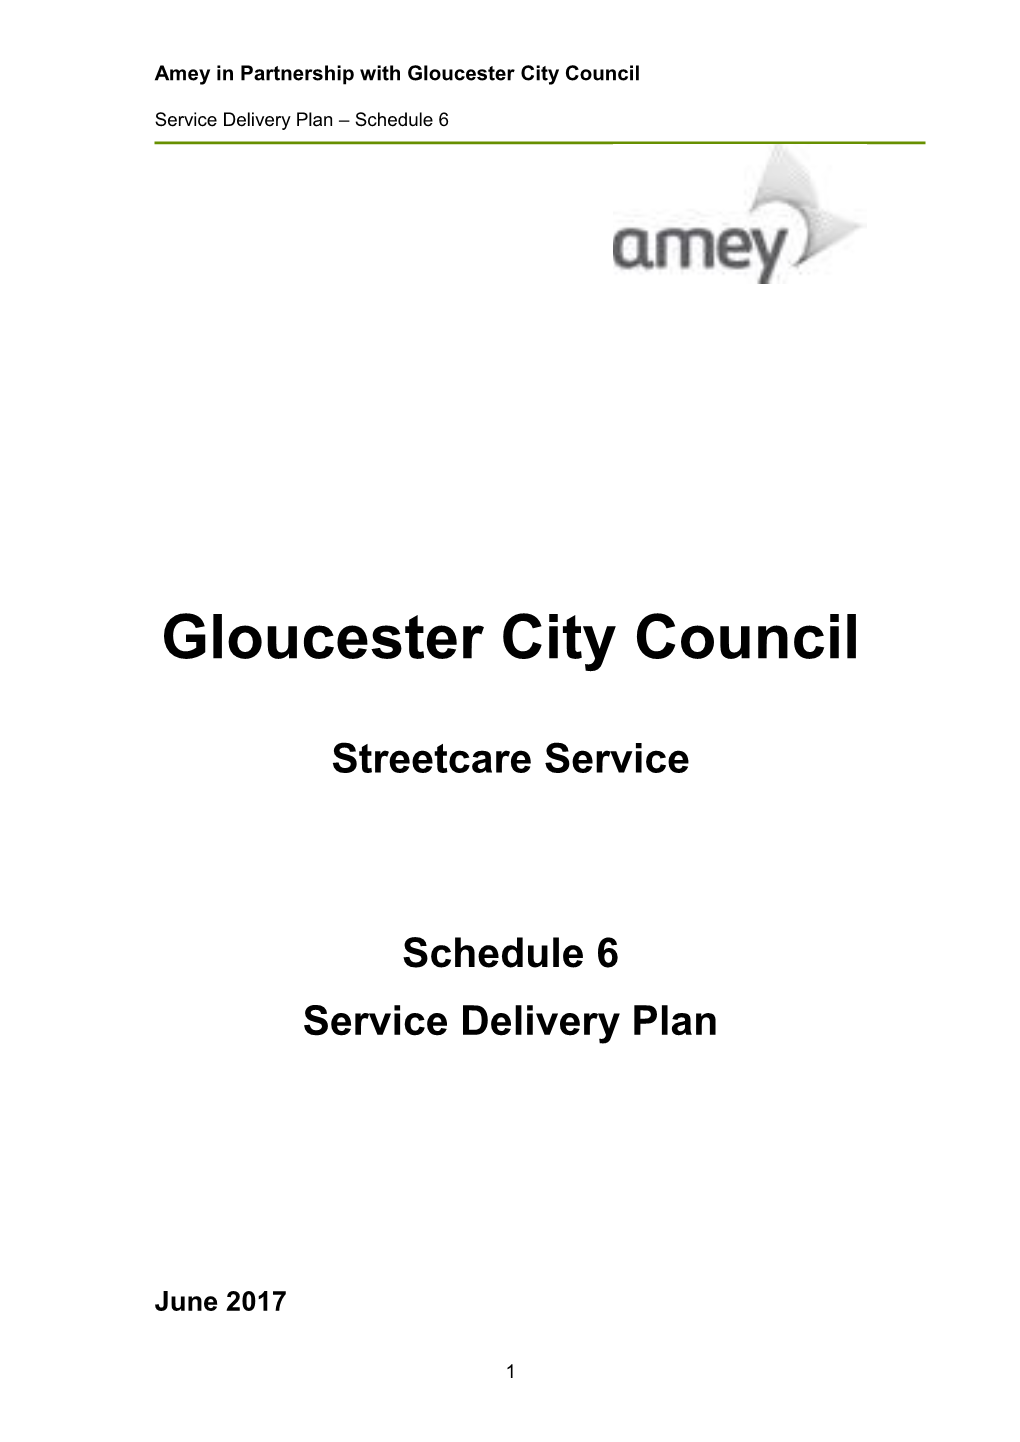 Gloucester Schedule 6